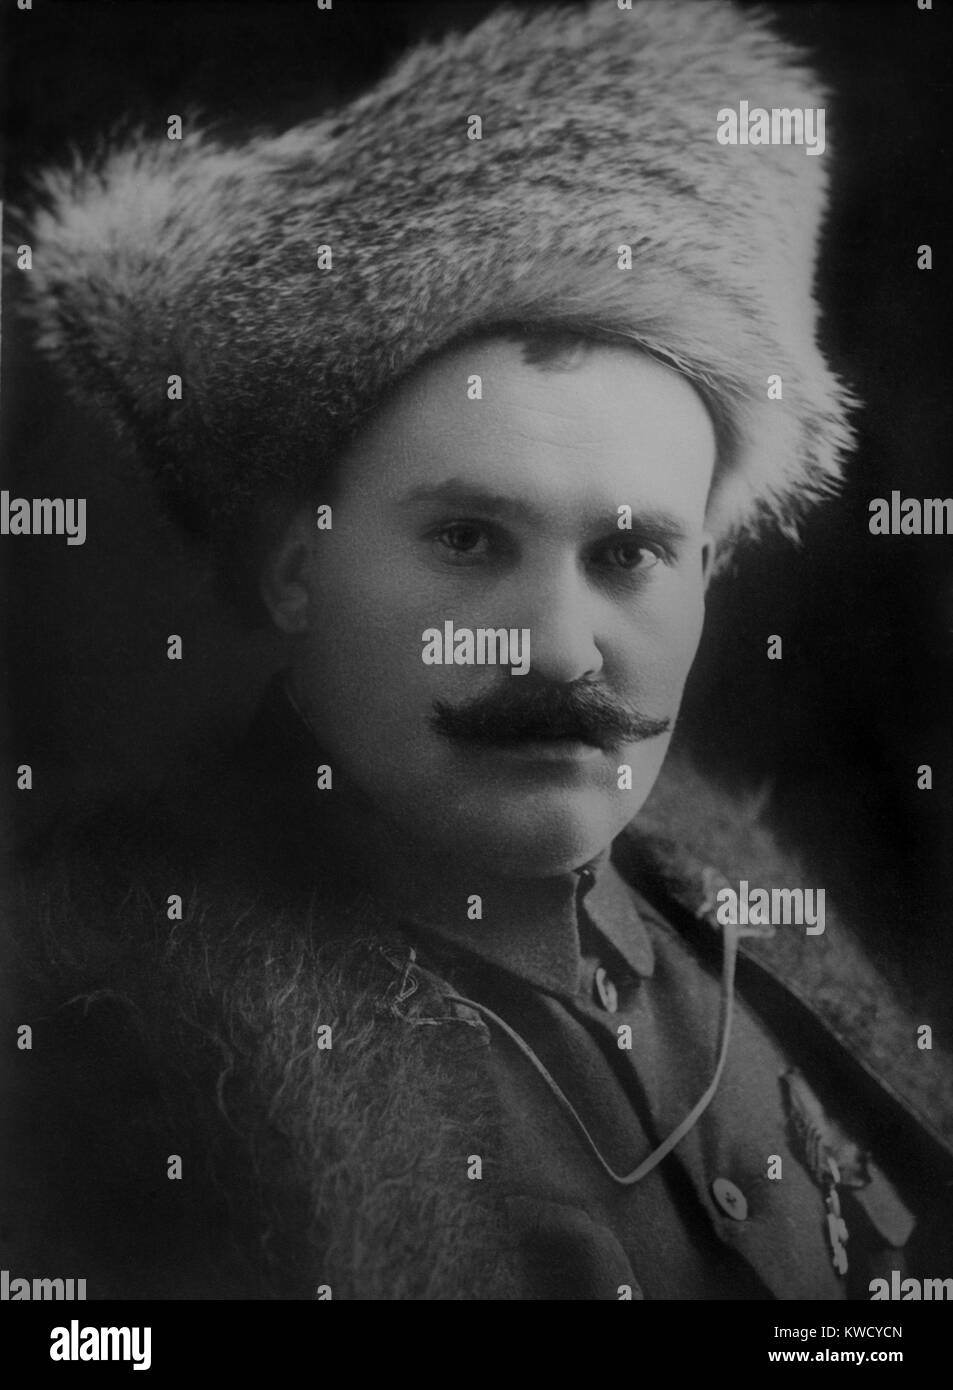 Grigori Semenoff, era un cosacco leader militare in Siberia sostenuta da francese, inglese e giapponese. Egli combatté contro i bolscevichi nella zona del ramo di Trans-Baikal di Trans-Siberian ferroviarie e incoraggiato il caos politico per il suo sponsor giapponese nel 1918-19 (BSLOC 2017 2 11) Foto Stock